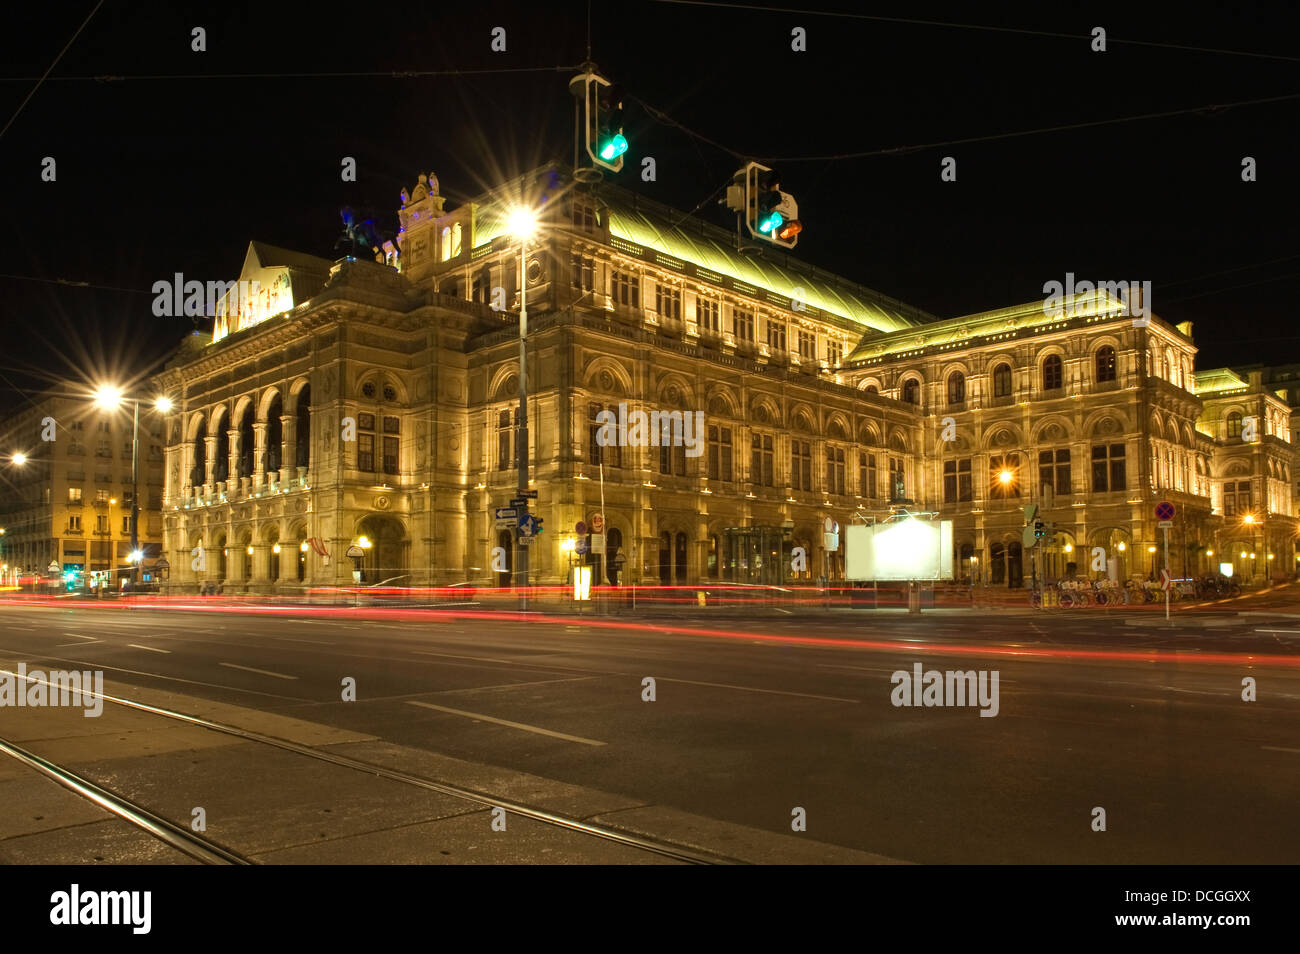 Staatsoper, Viennas grand Opera House at night Stock Photo